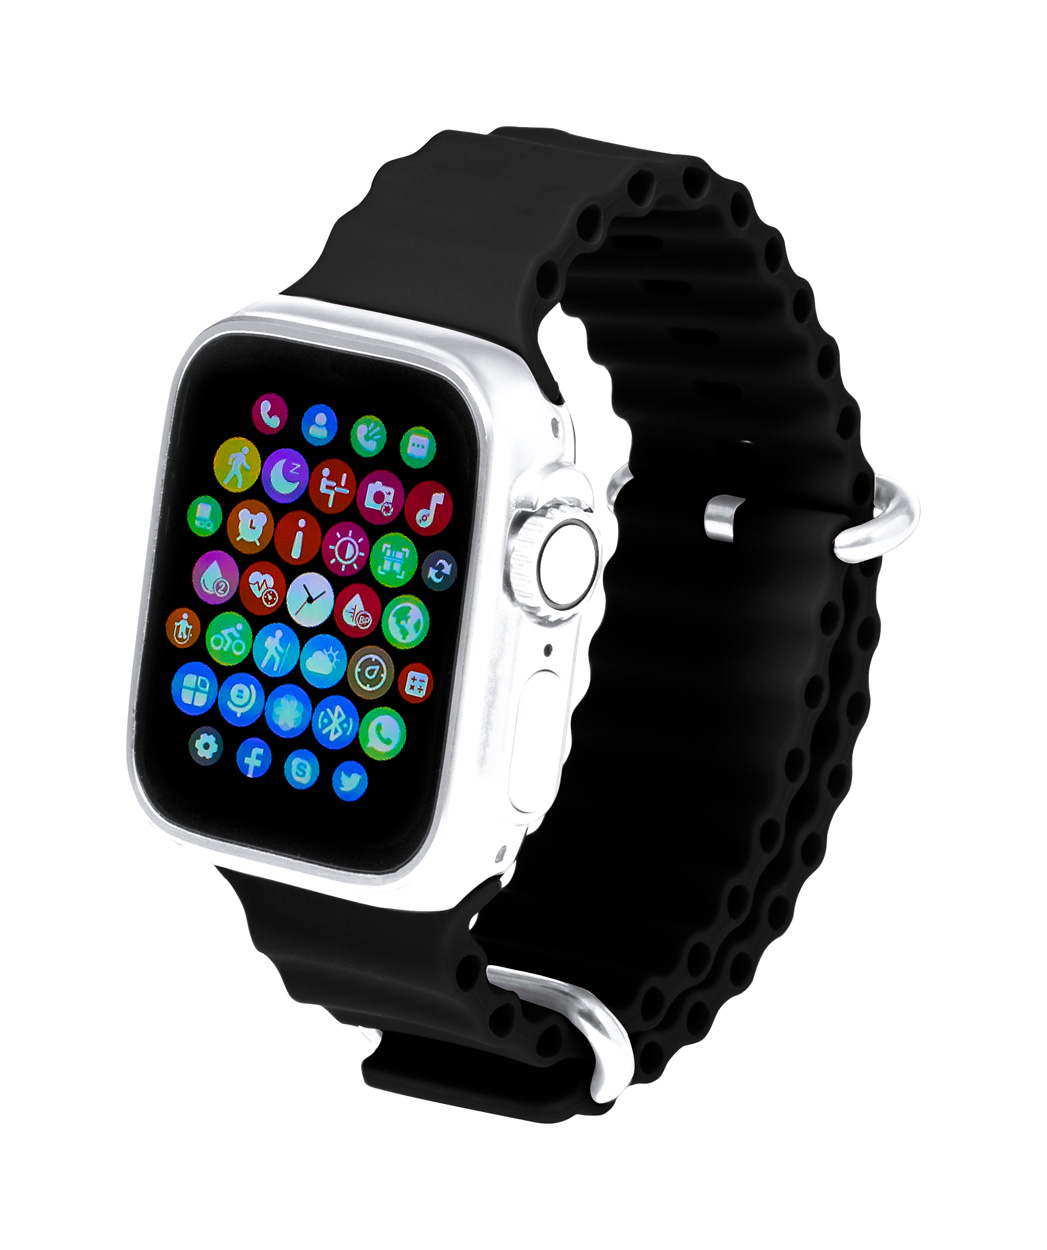 Chytré hodinky CONNOR s barevným displejem - černá